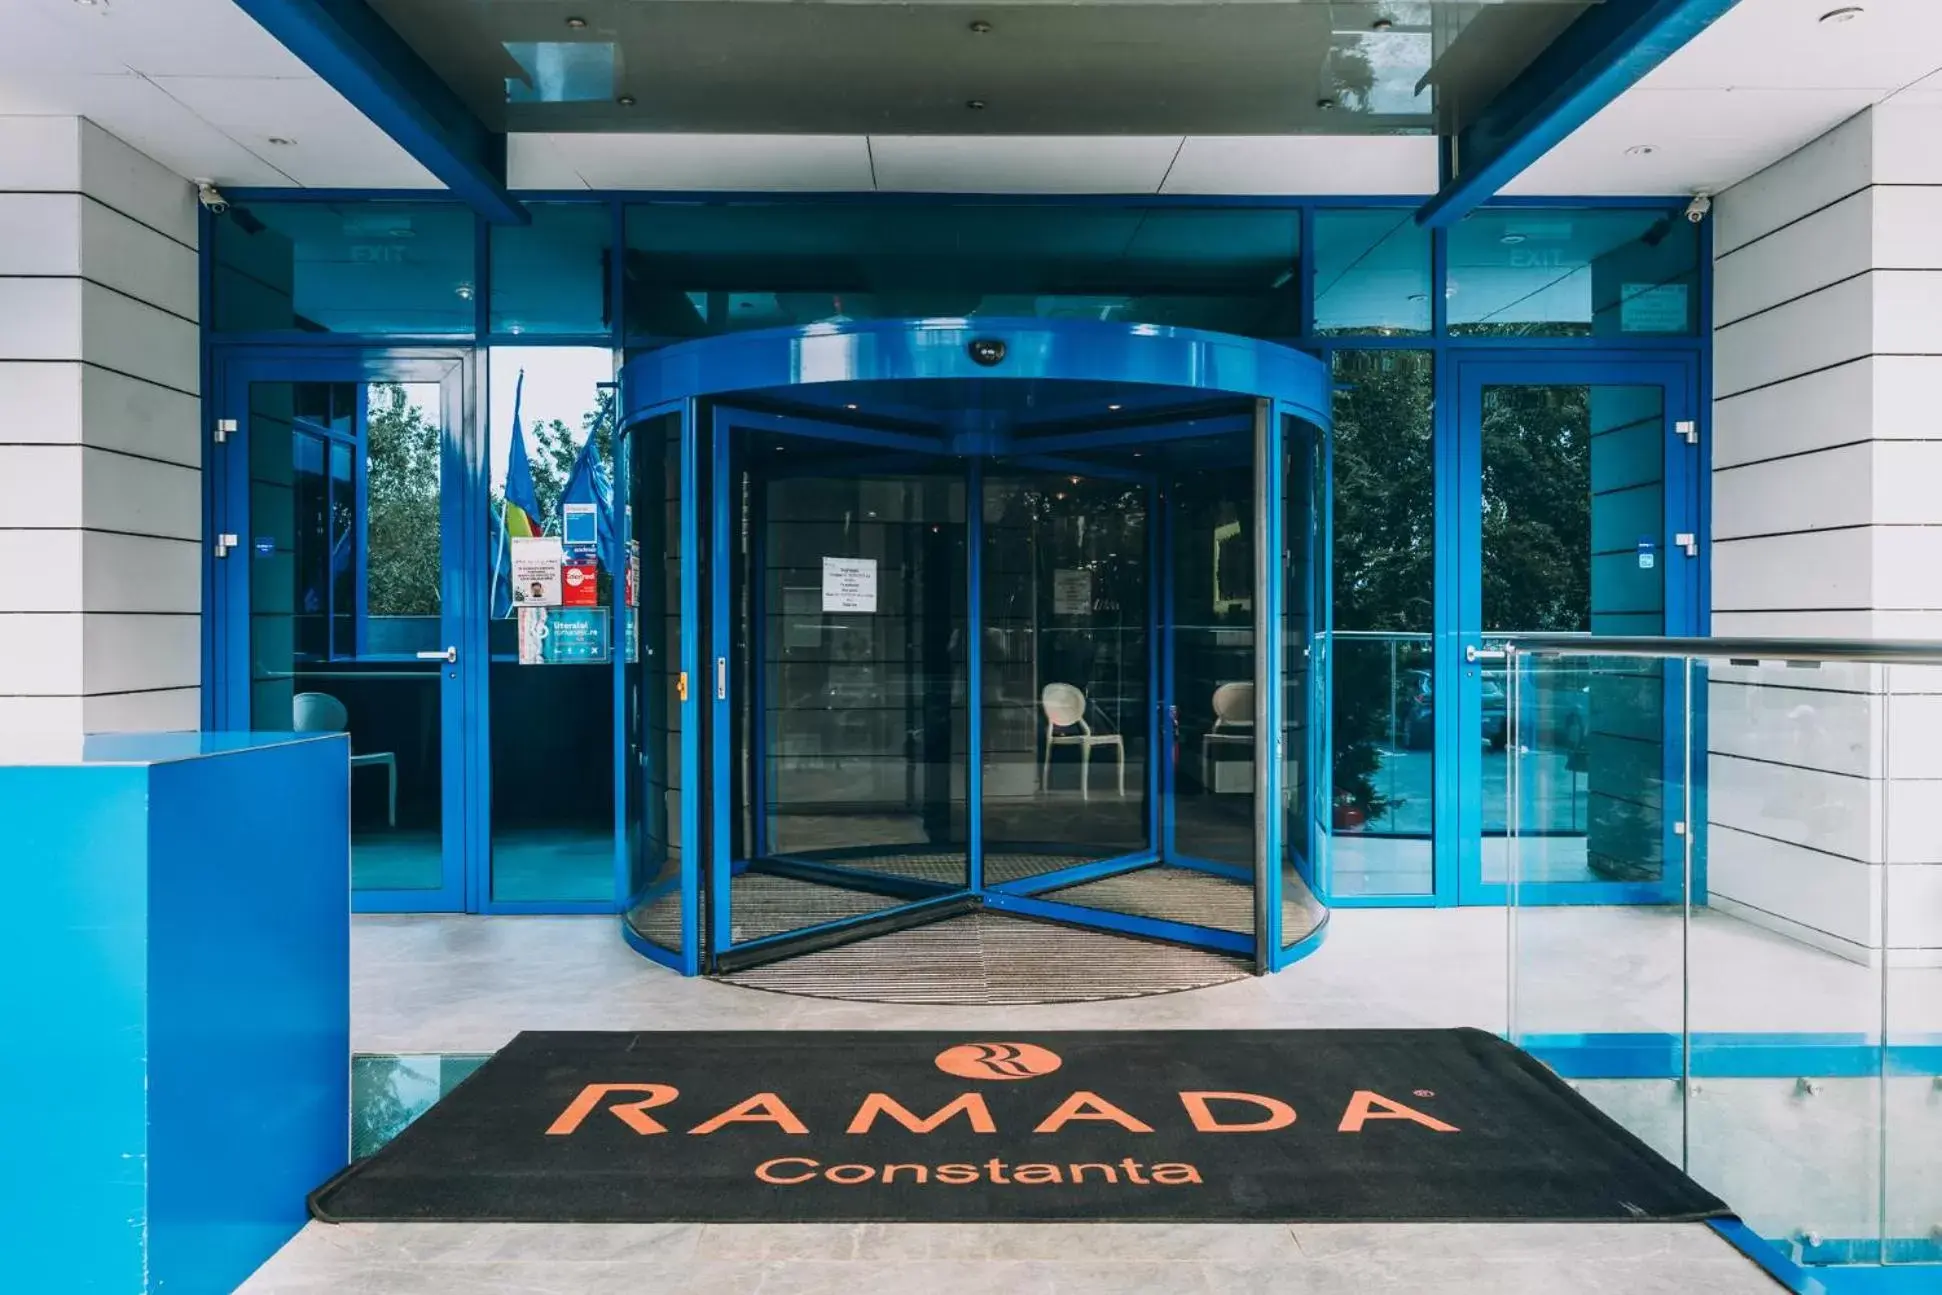 Facade/entrance in Ramada by Wyndham Constanta